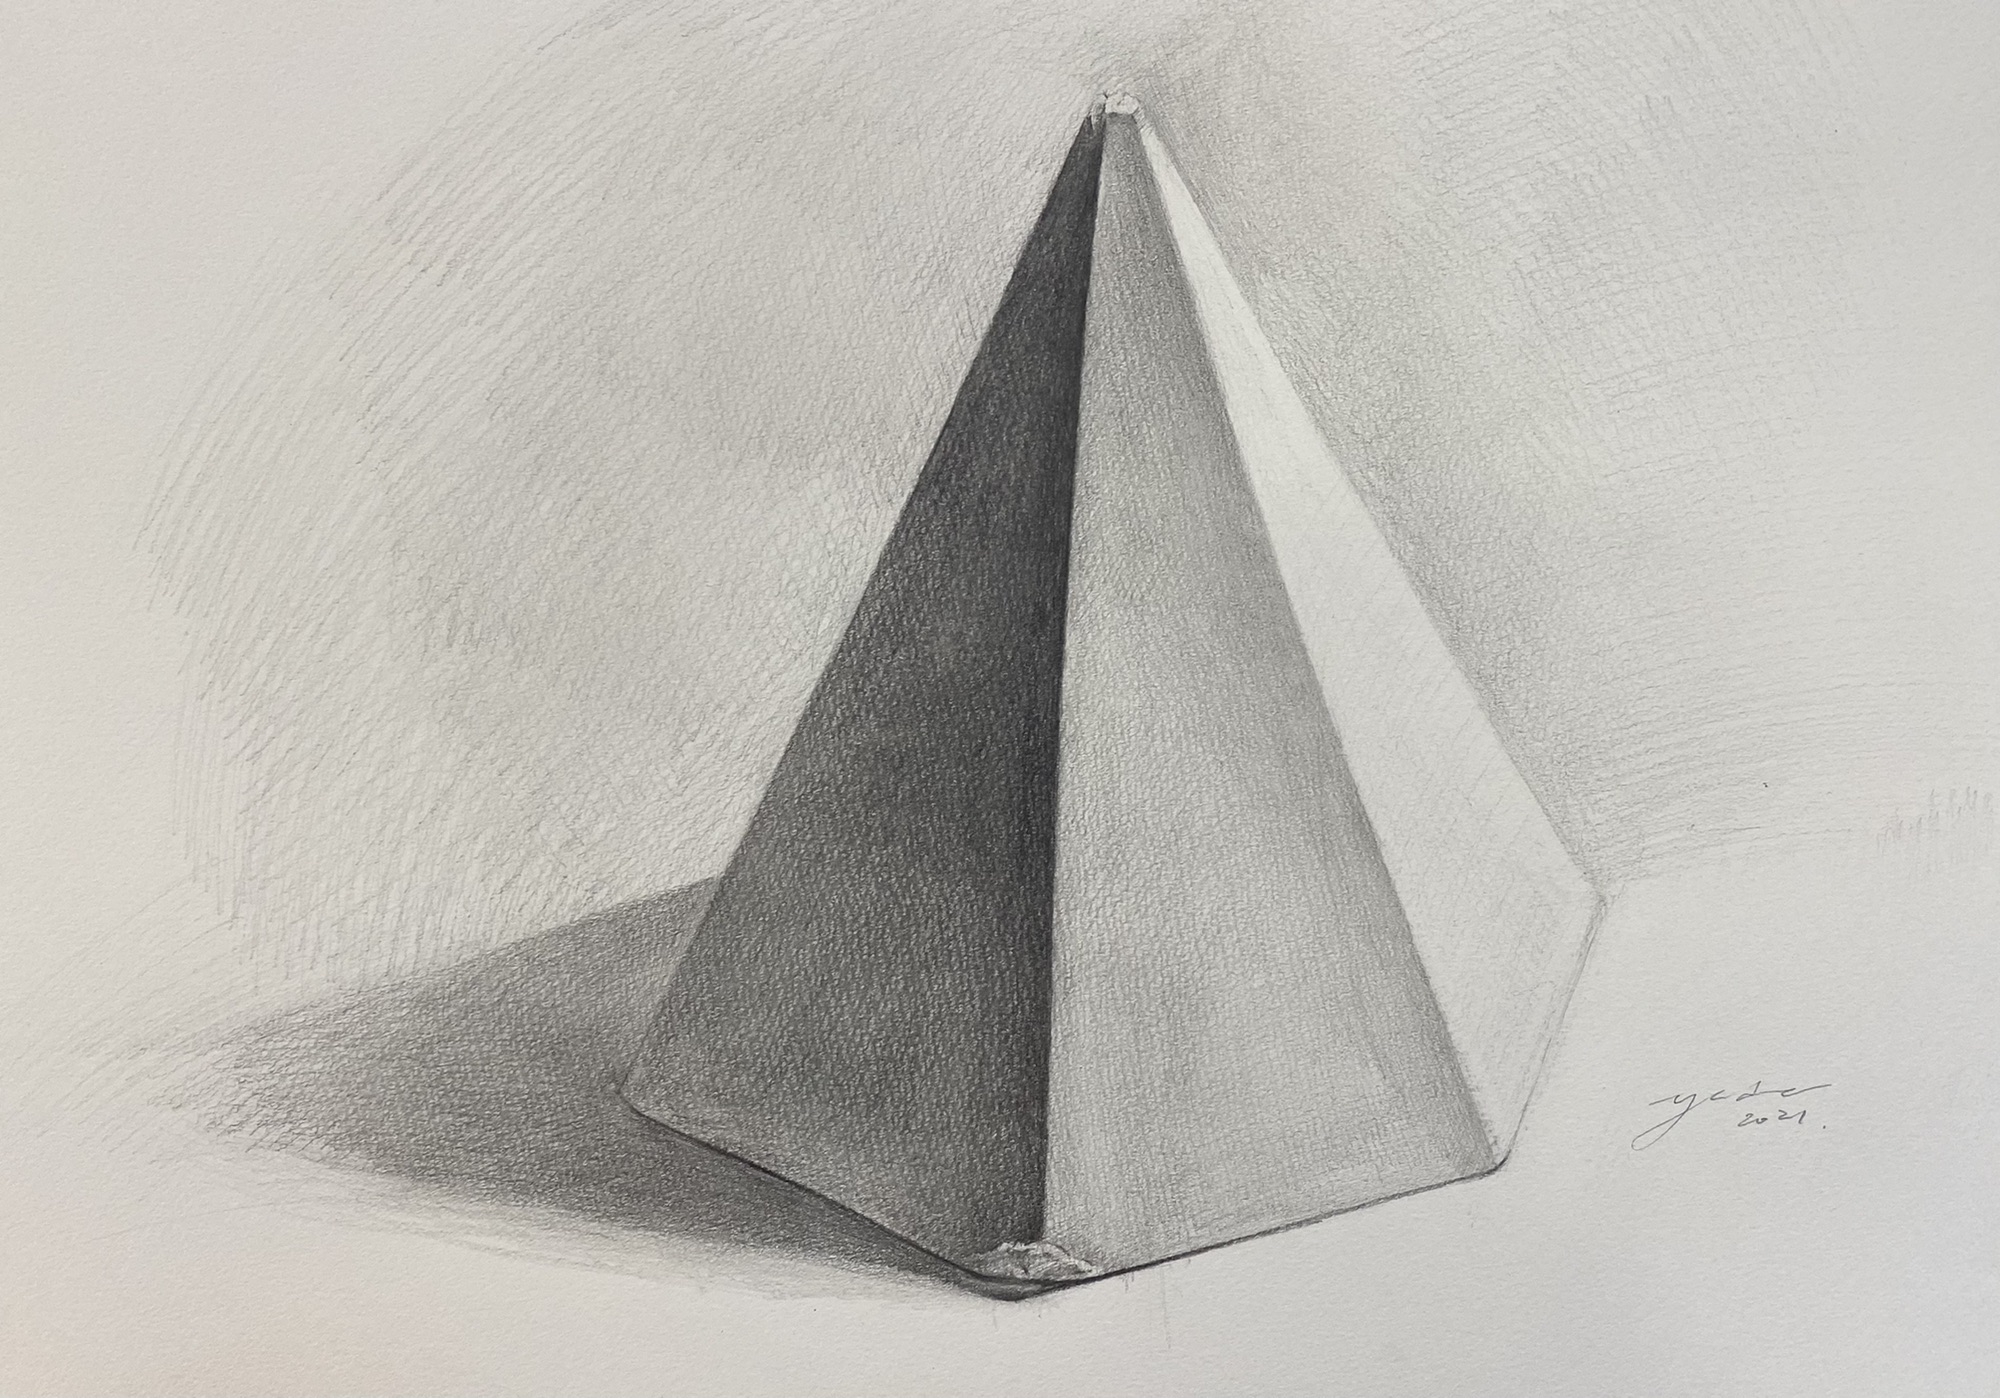 石膏デッサン用 幾何形態 立方体 円錐＋円柱 石膏像 - アート用品